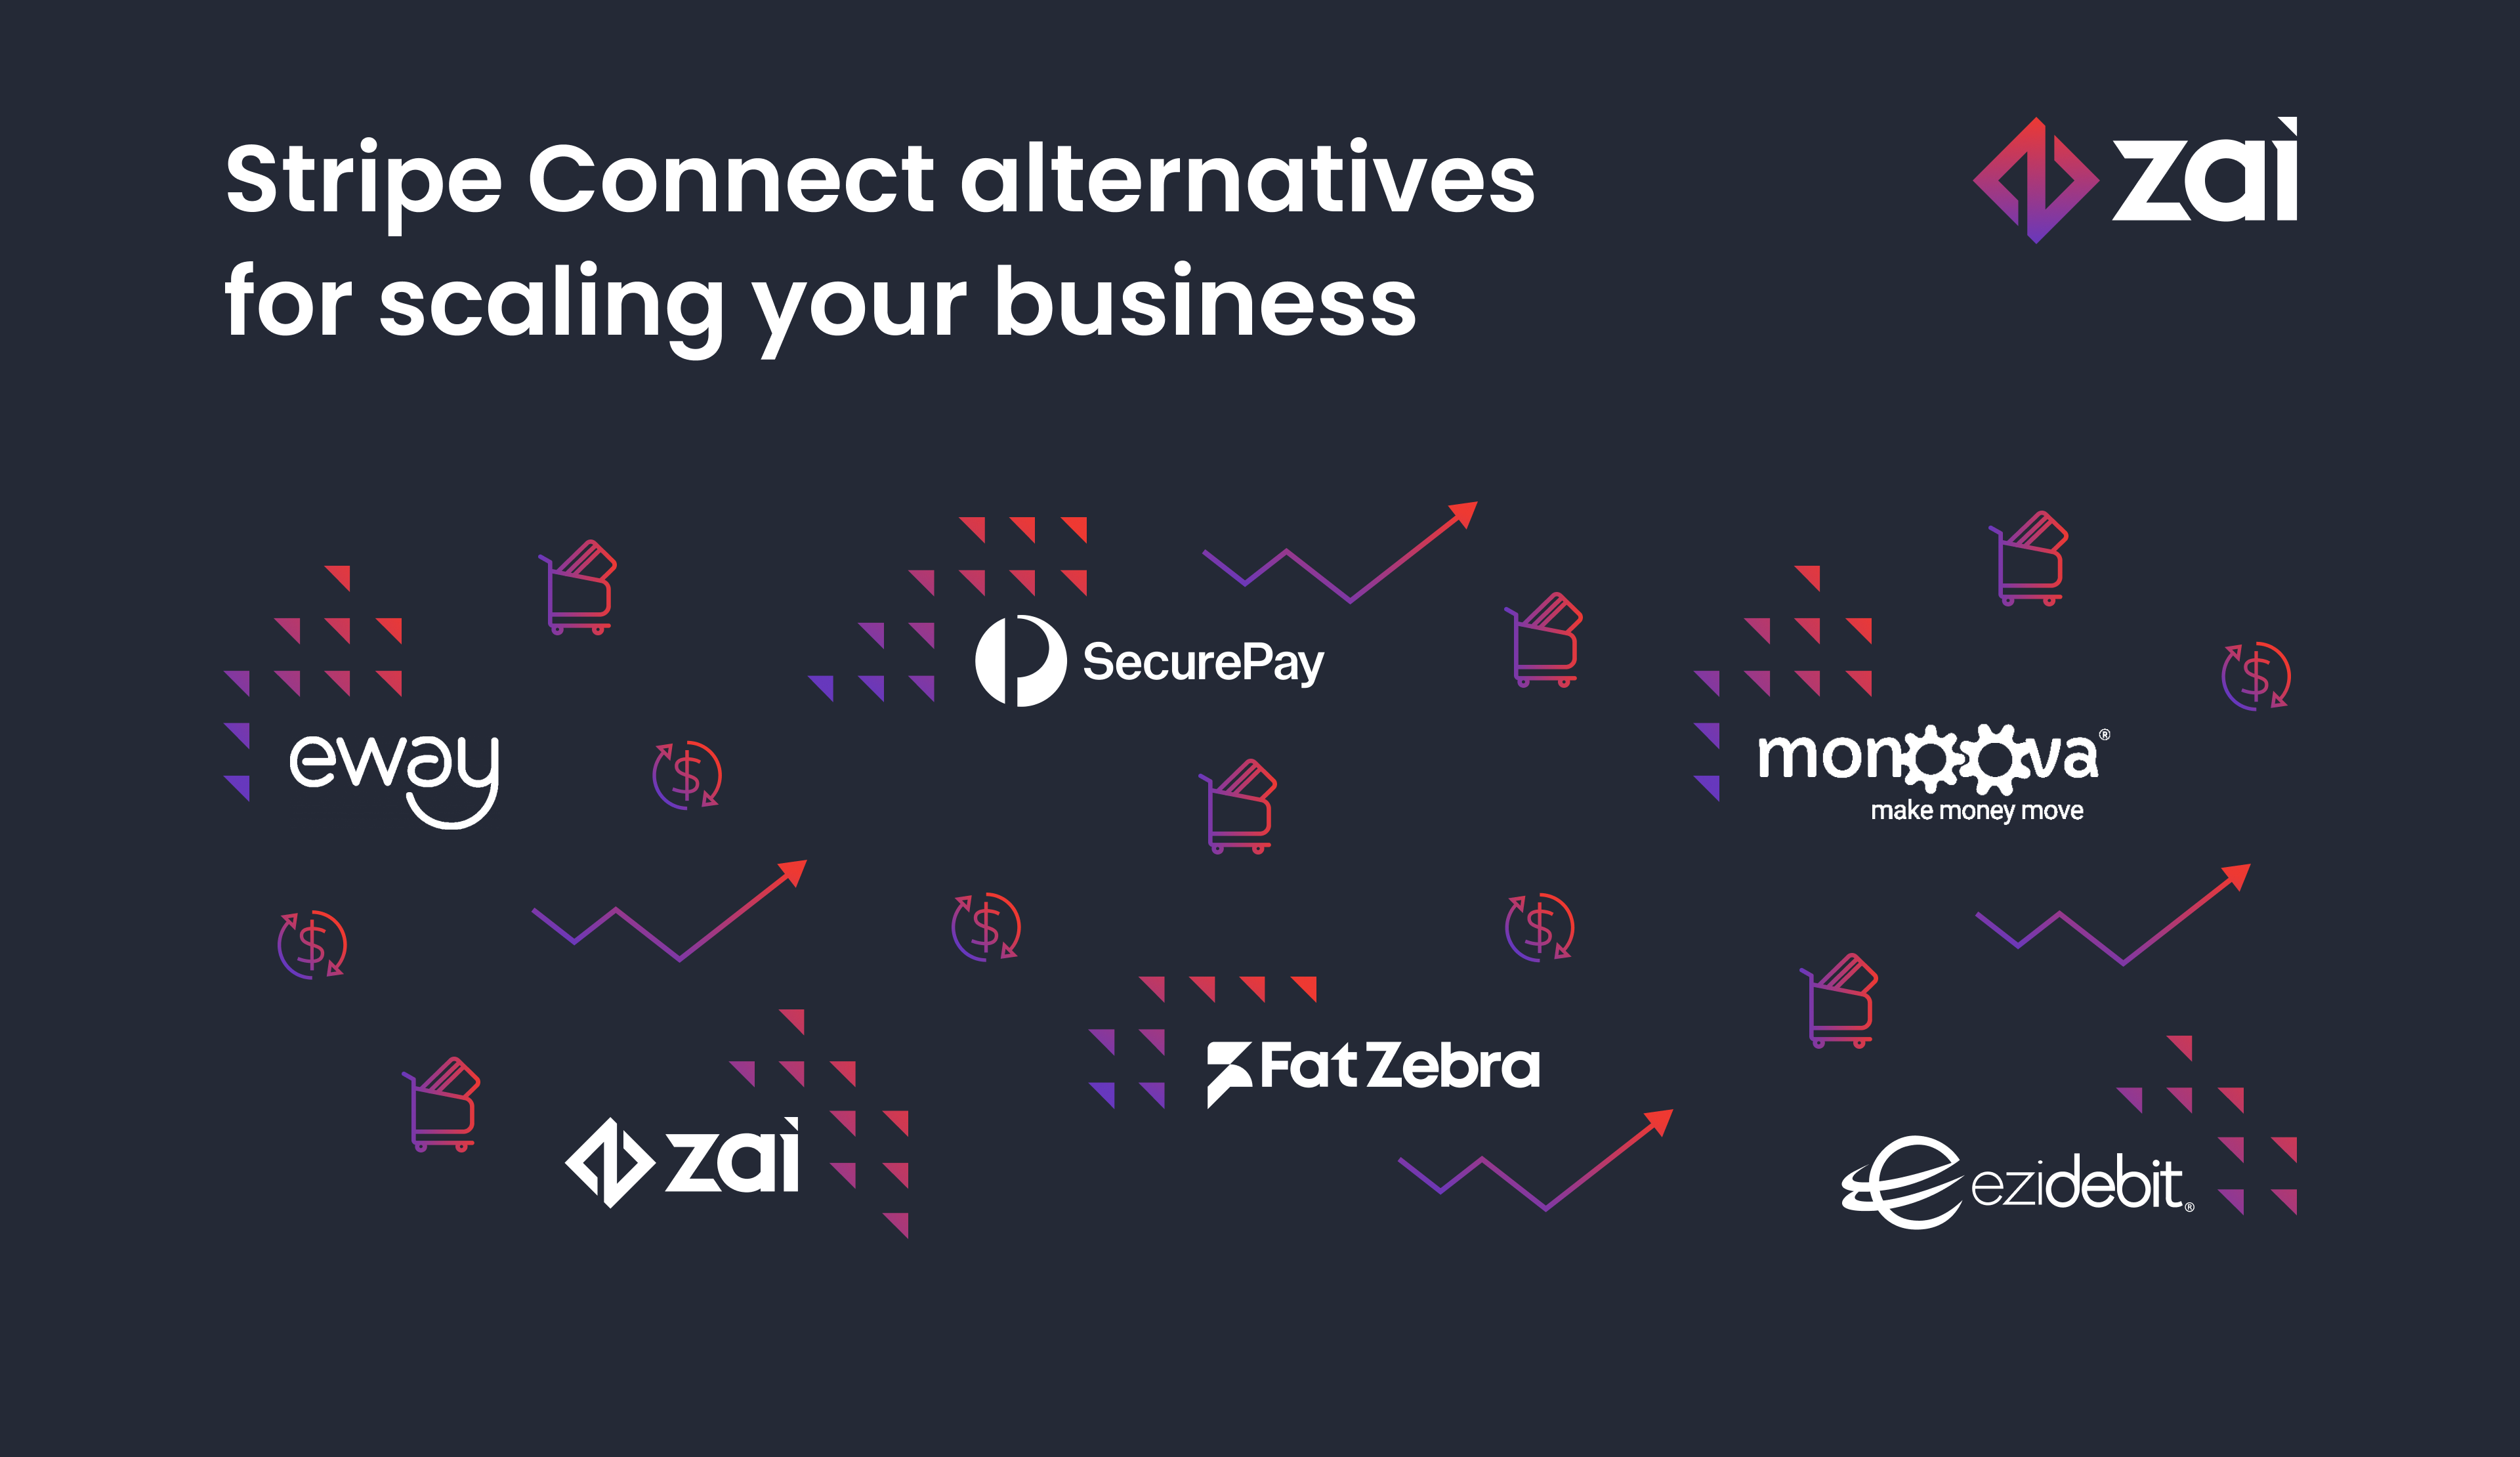 Best Stripe Connect alternatives for Australian businesses